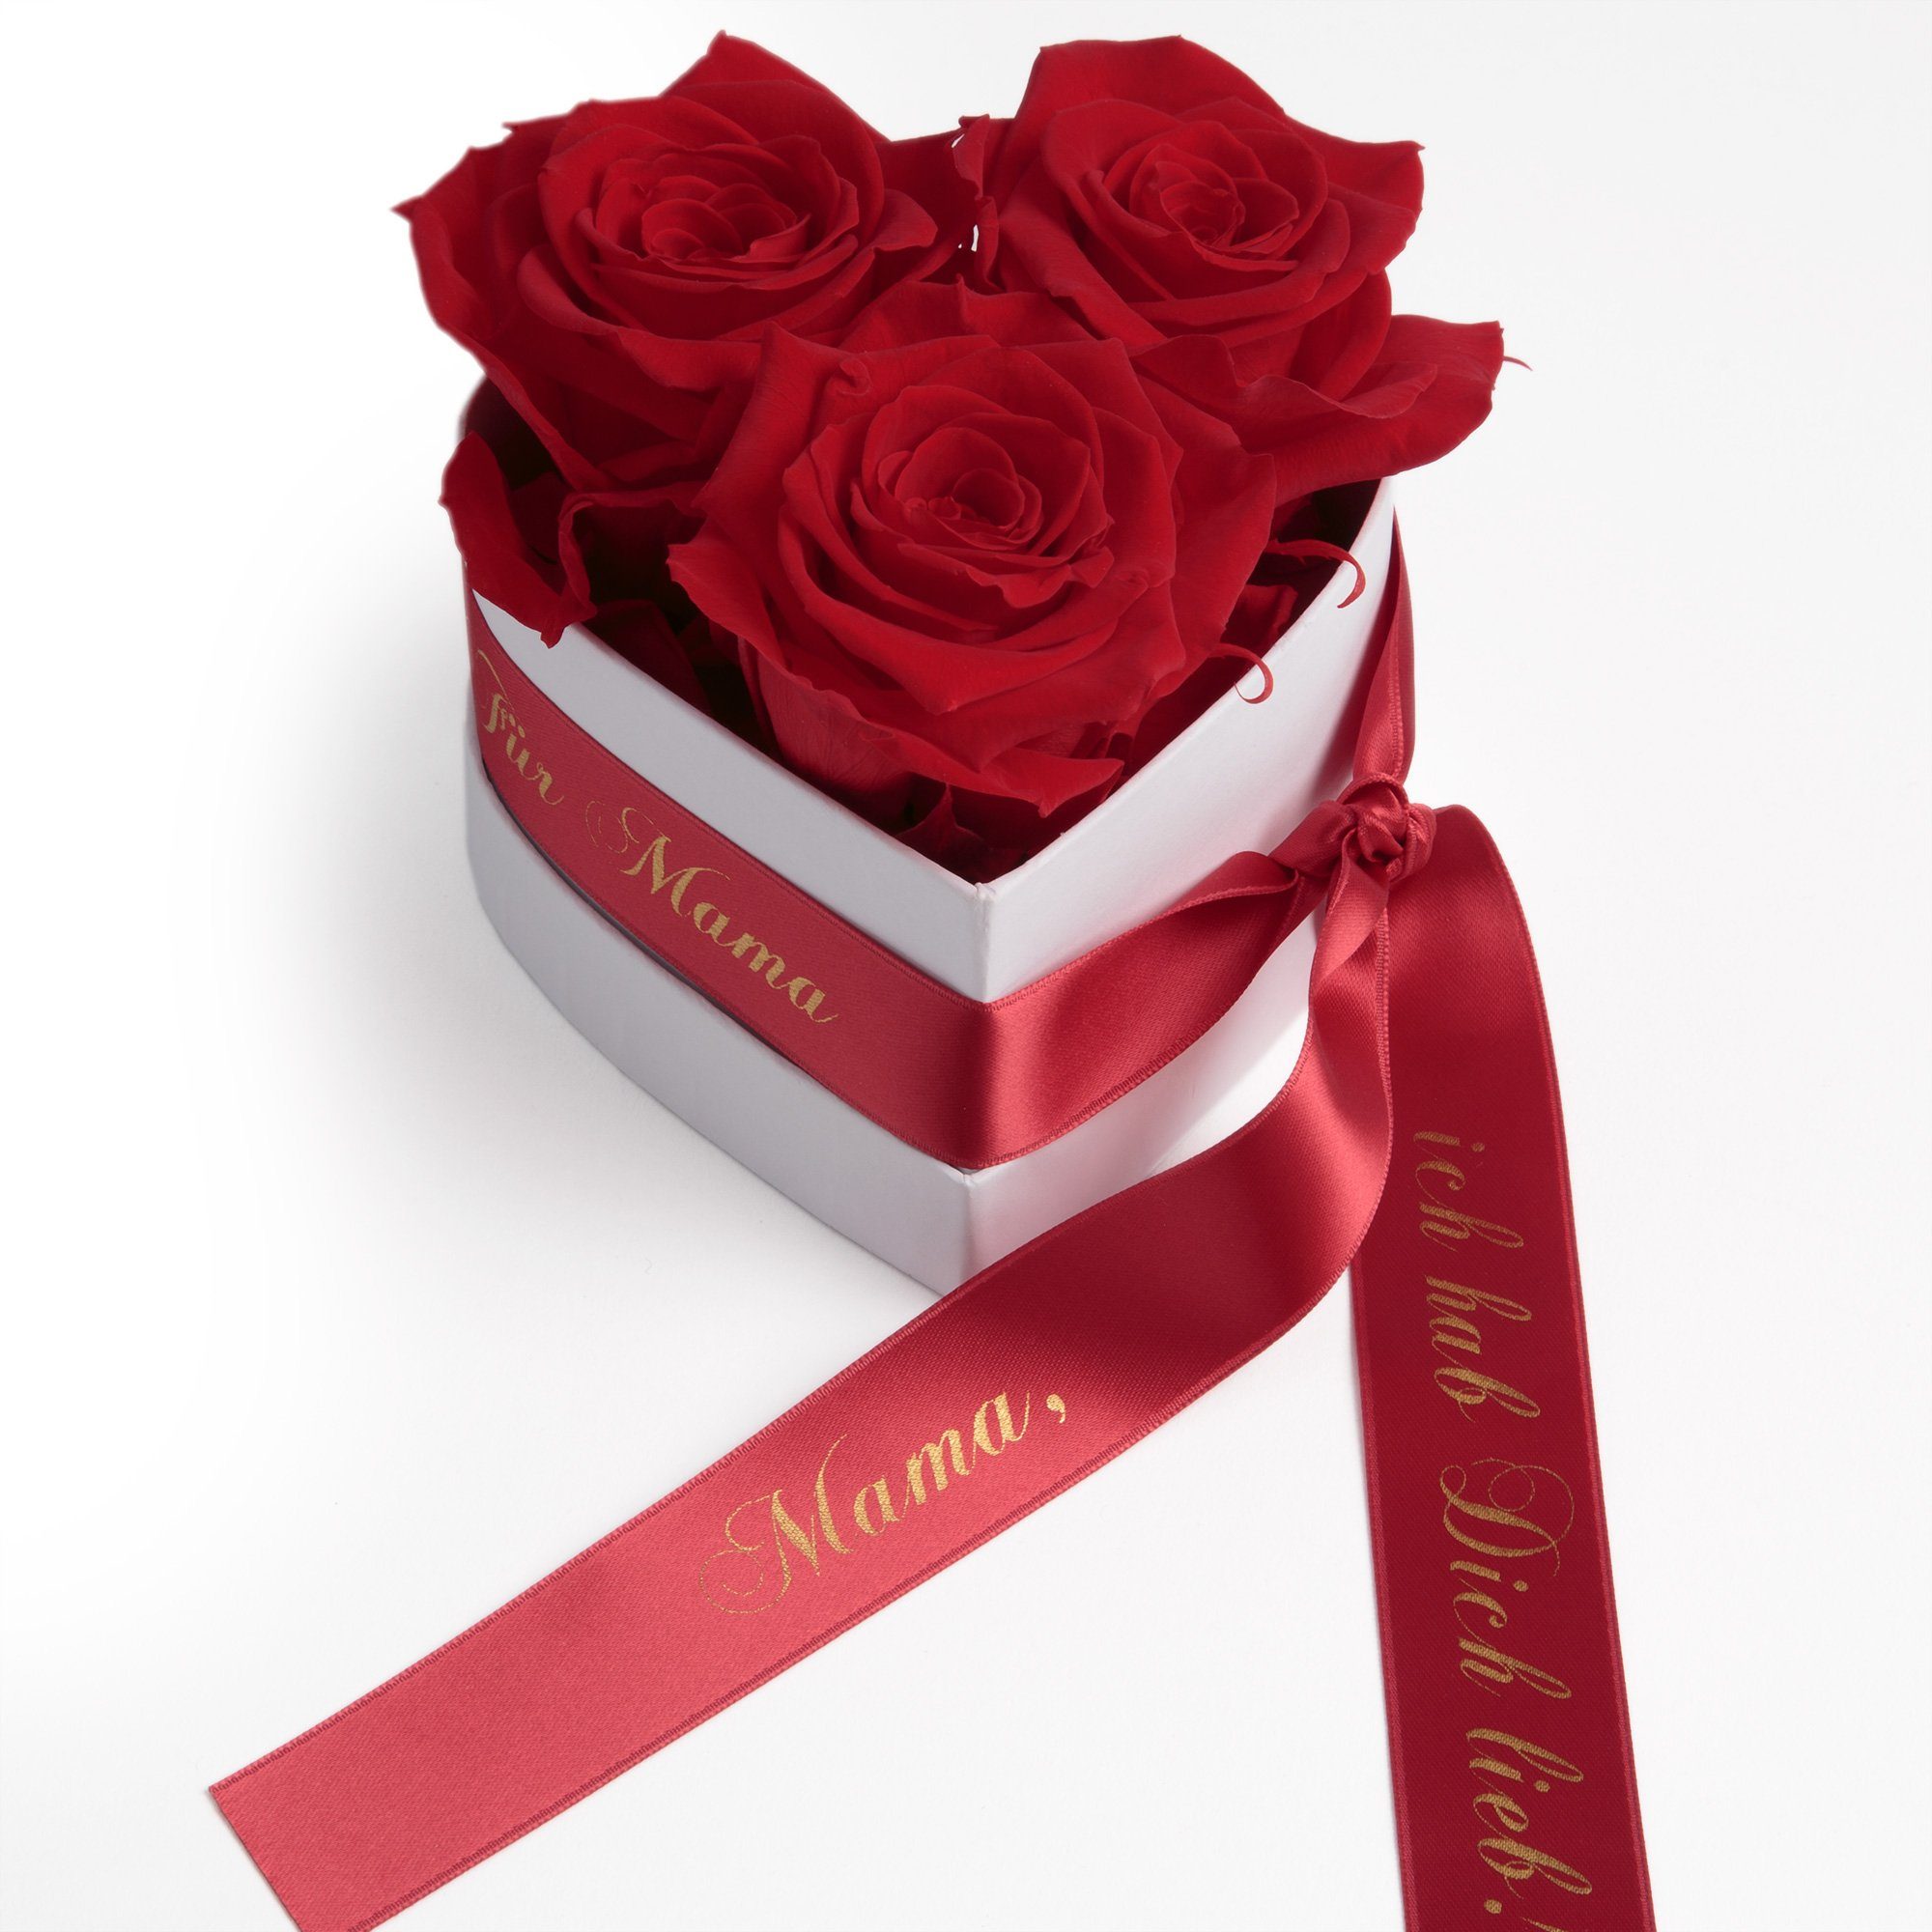 Kunstblume Rosenbox Herz 3 Infinity Rosen Mama, ich hab Dich lieb Geschenk Rose, ROSEMARIE SCHULZ Heidelberg, Höhe 10 cm, echte Rosen haltbar bis zu 3 Jahre Rot